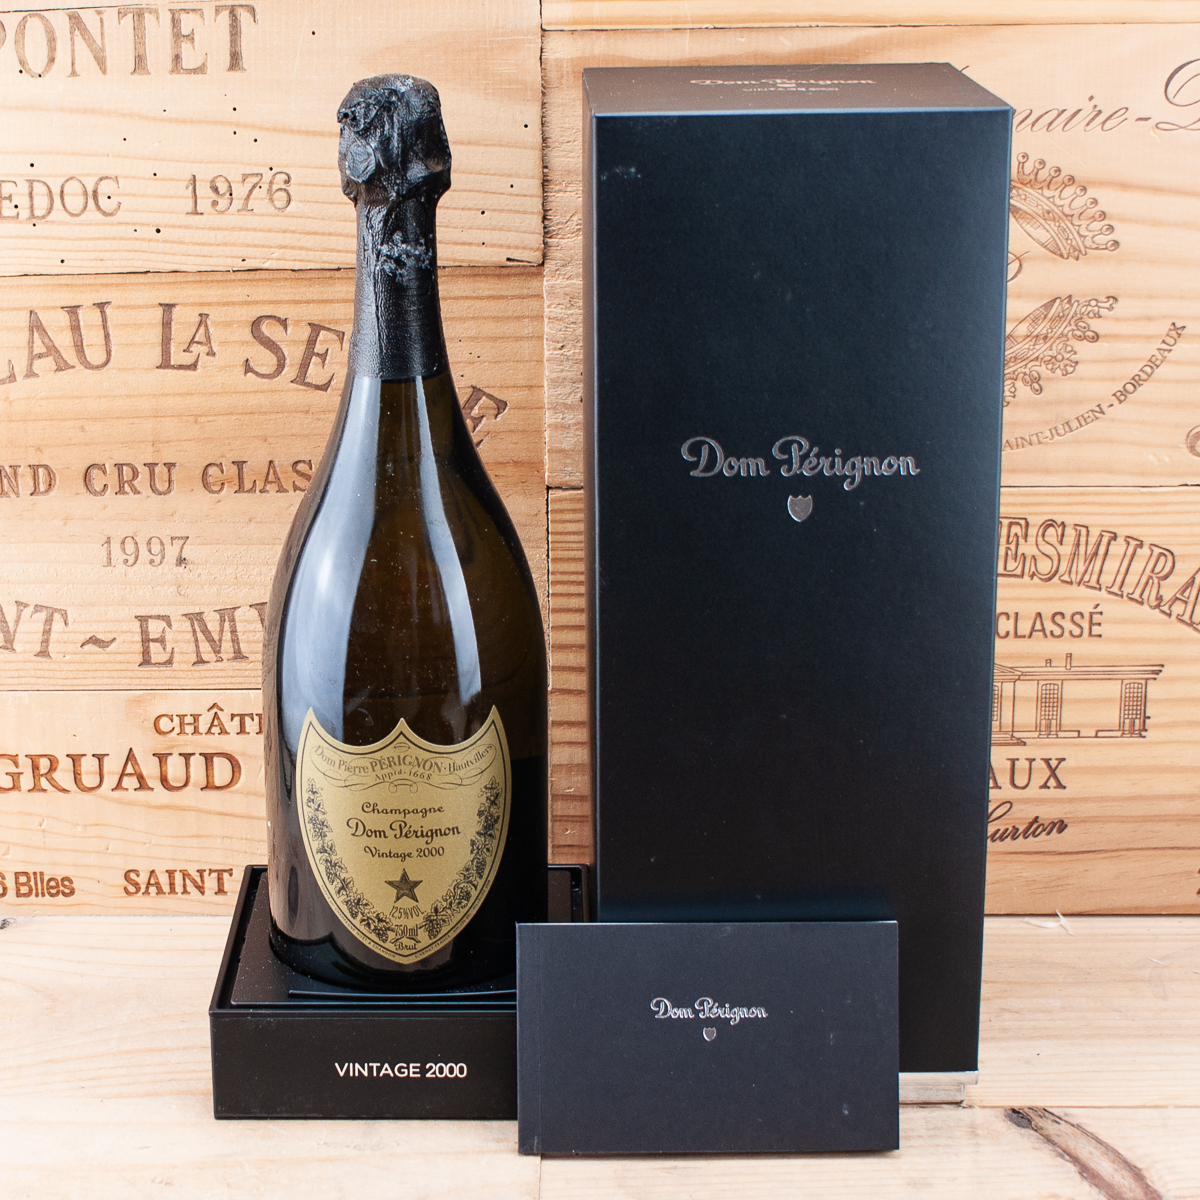 2000 Champagne Dom Perignon Vintage